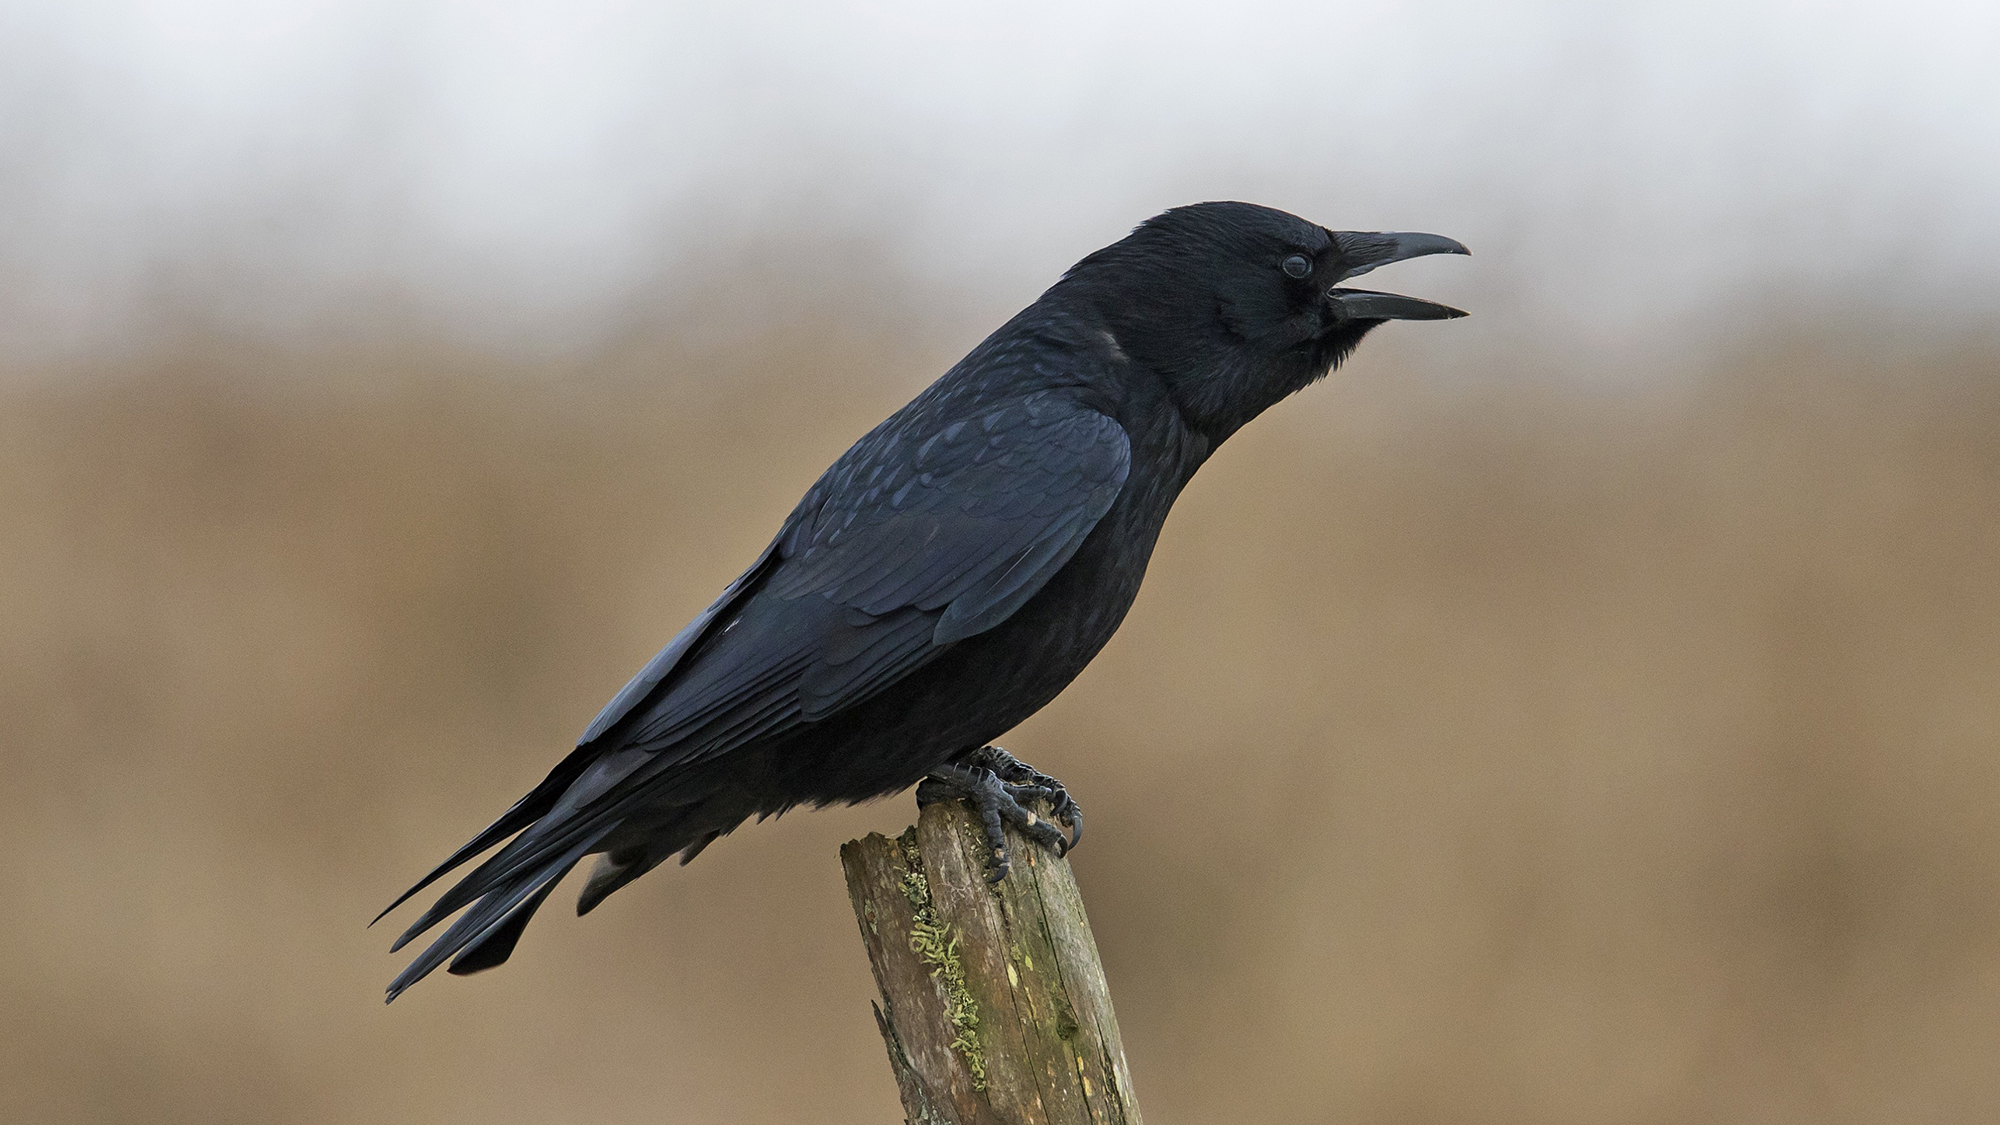 Les corbeaux peuvent « compter » de la même manière que les tout-petits, selon une nouvelle étude